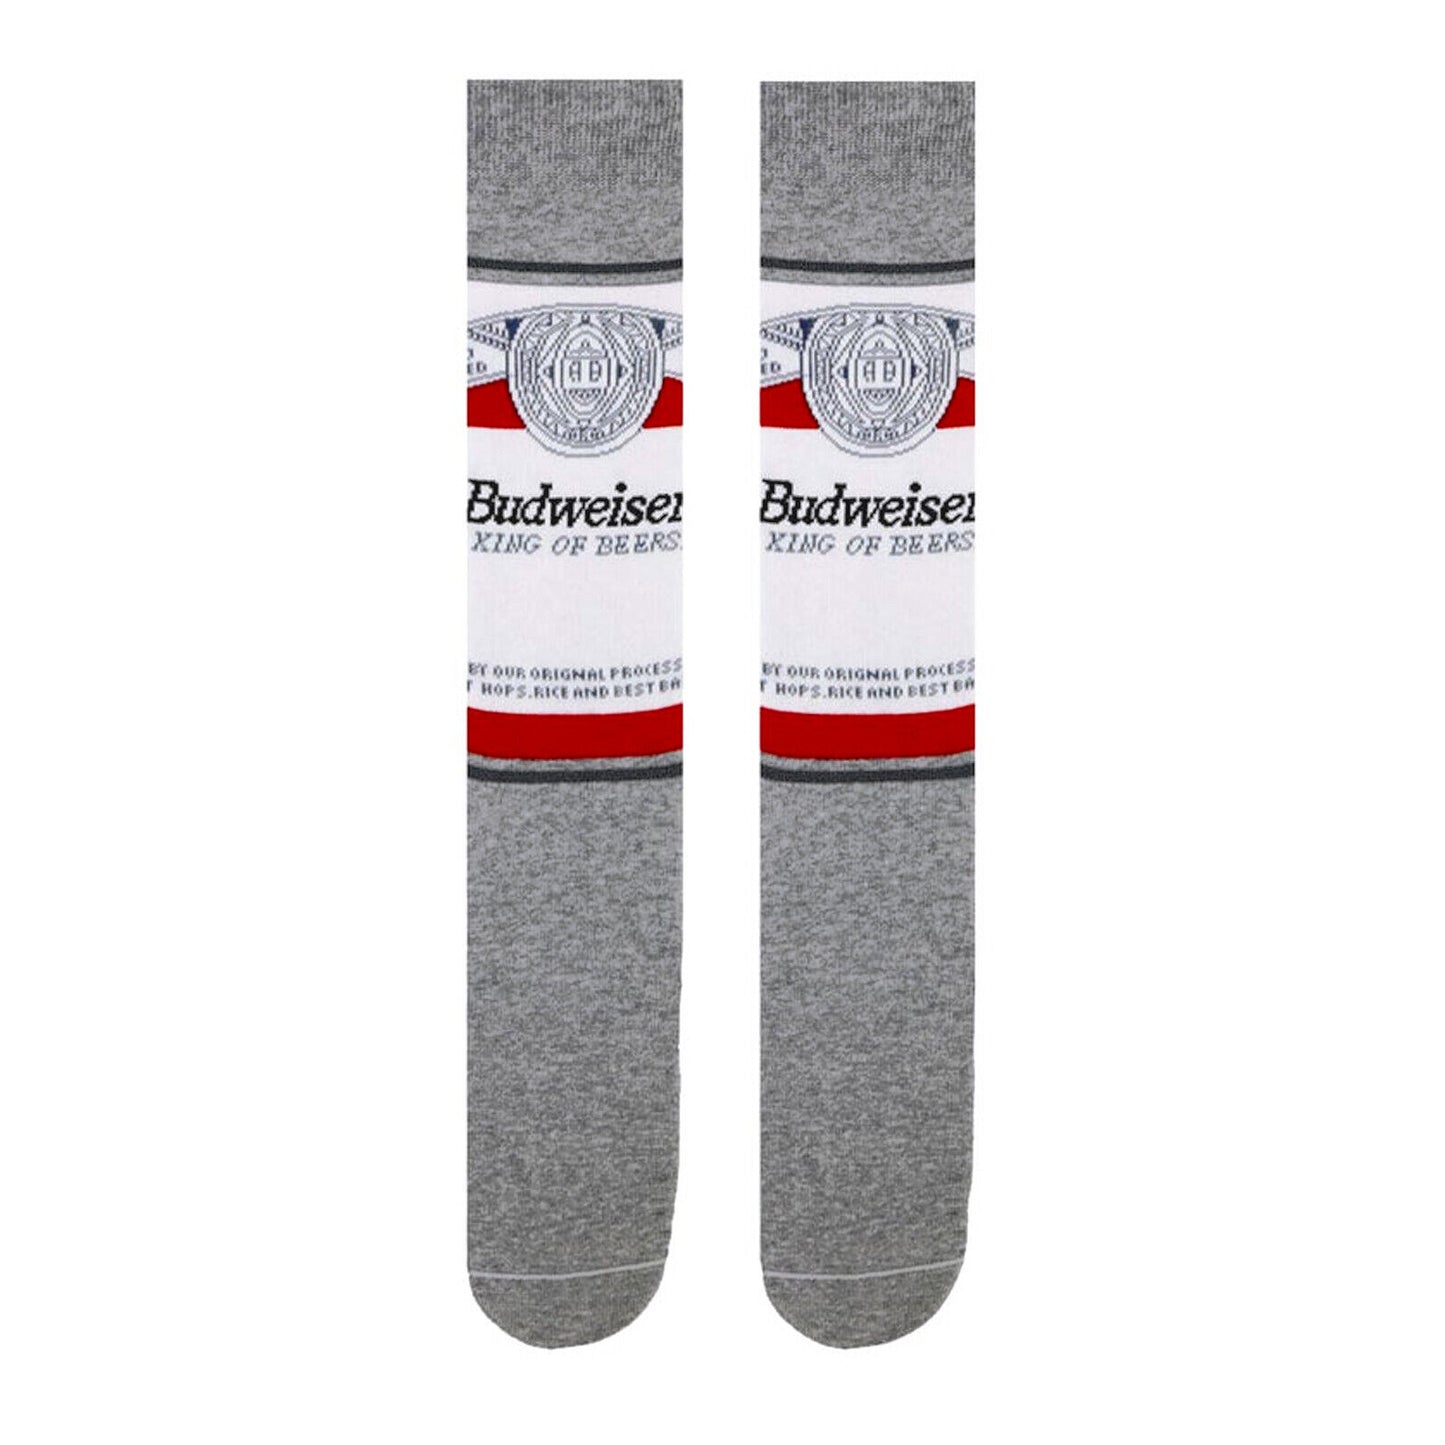 Budweiser Men's Socks Size 8-11